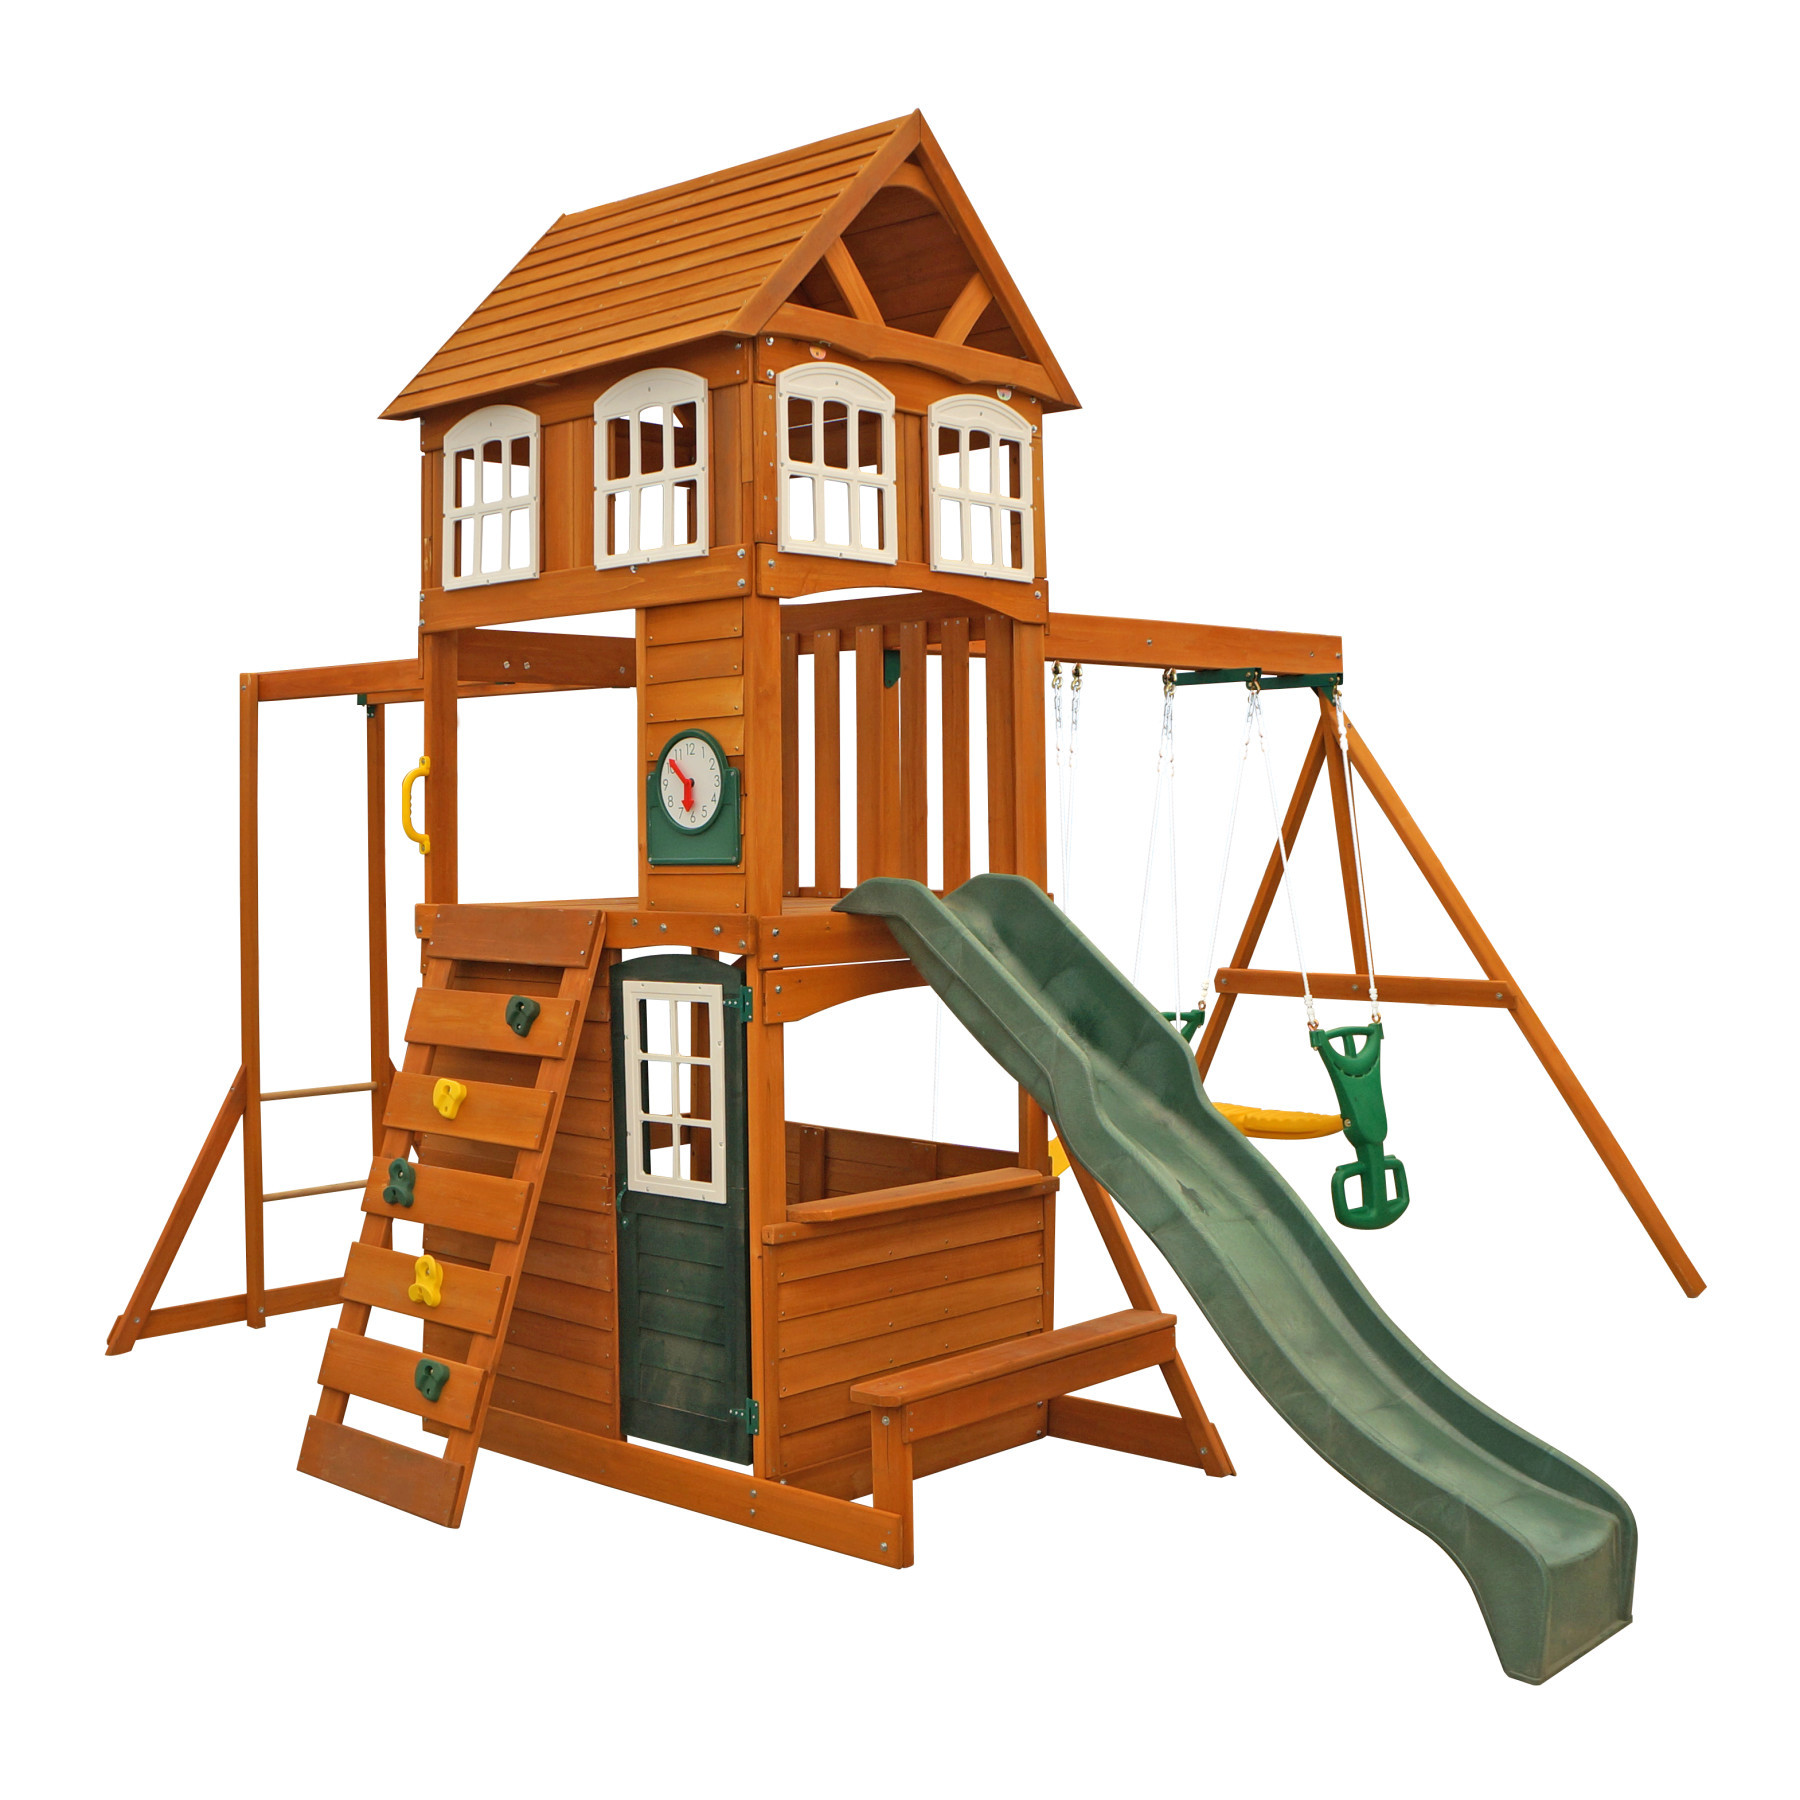 cranbrook wooden playhouse